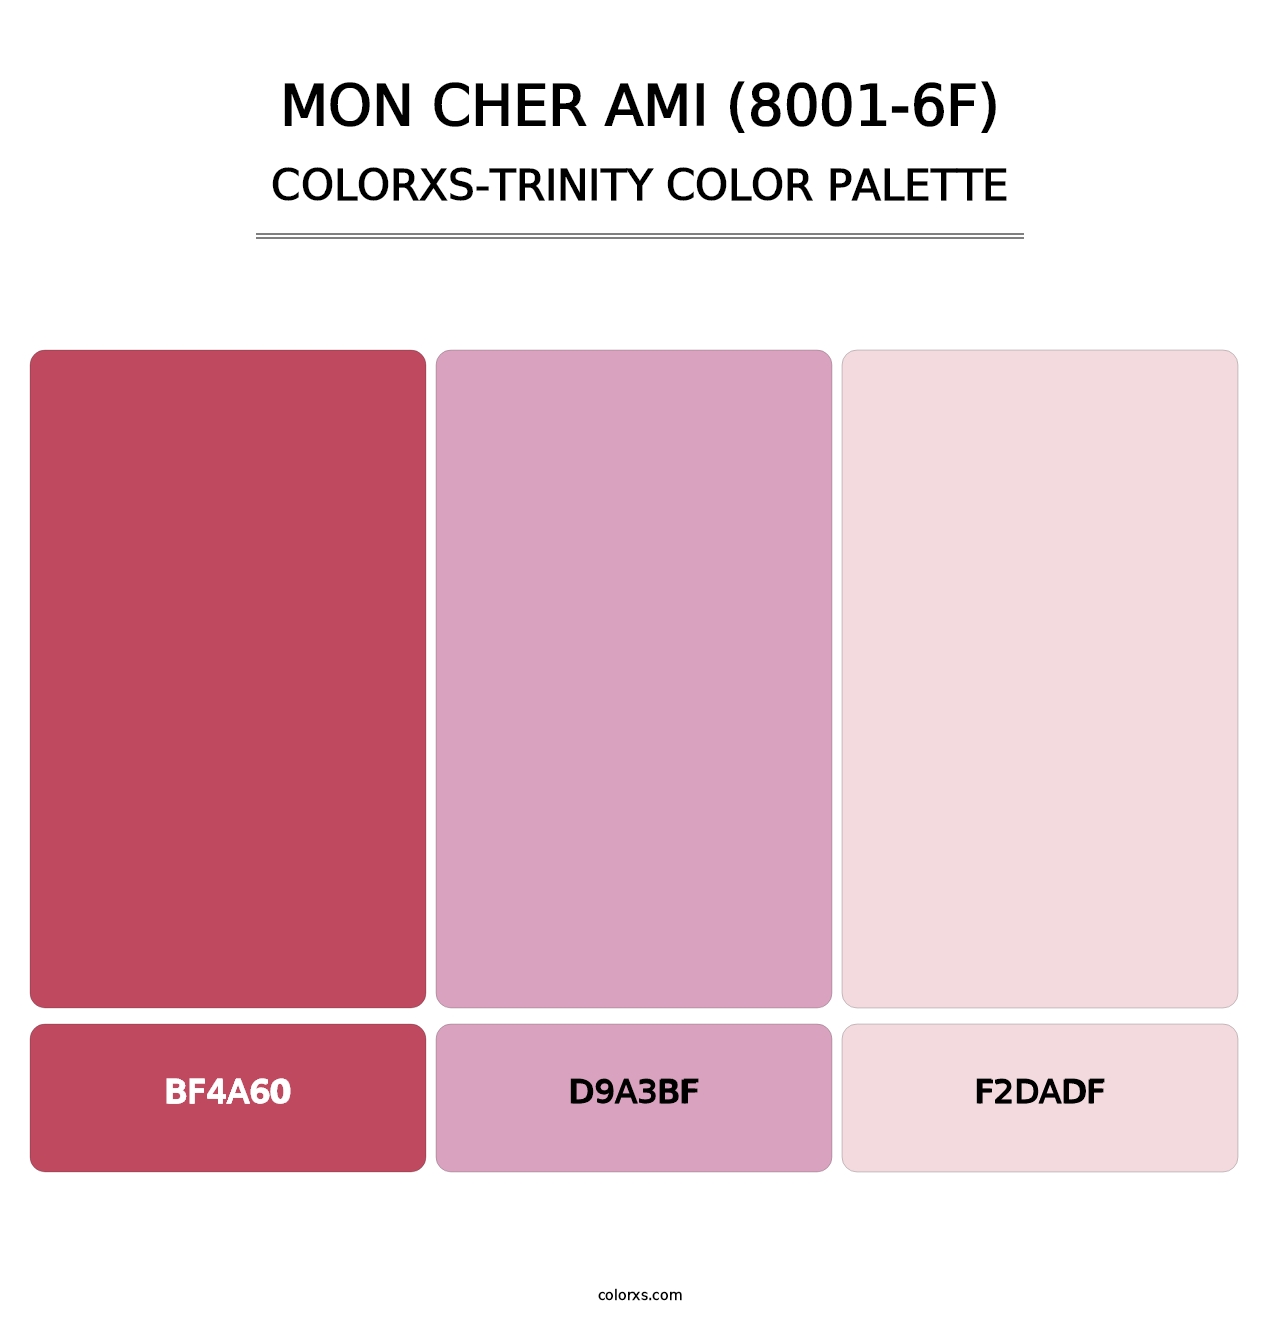 Mon Cher Ami (8001-6F) - Colorxs Trinity Palette